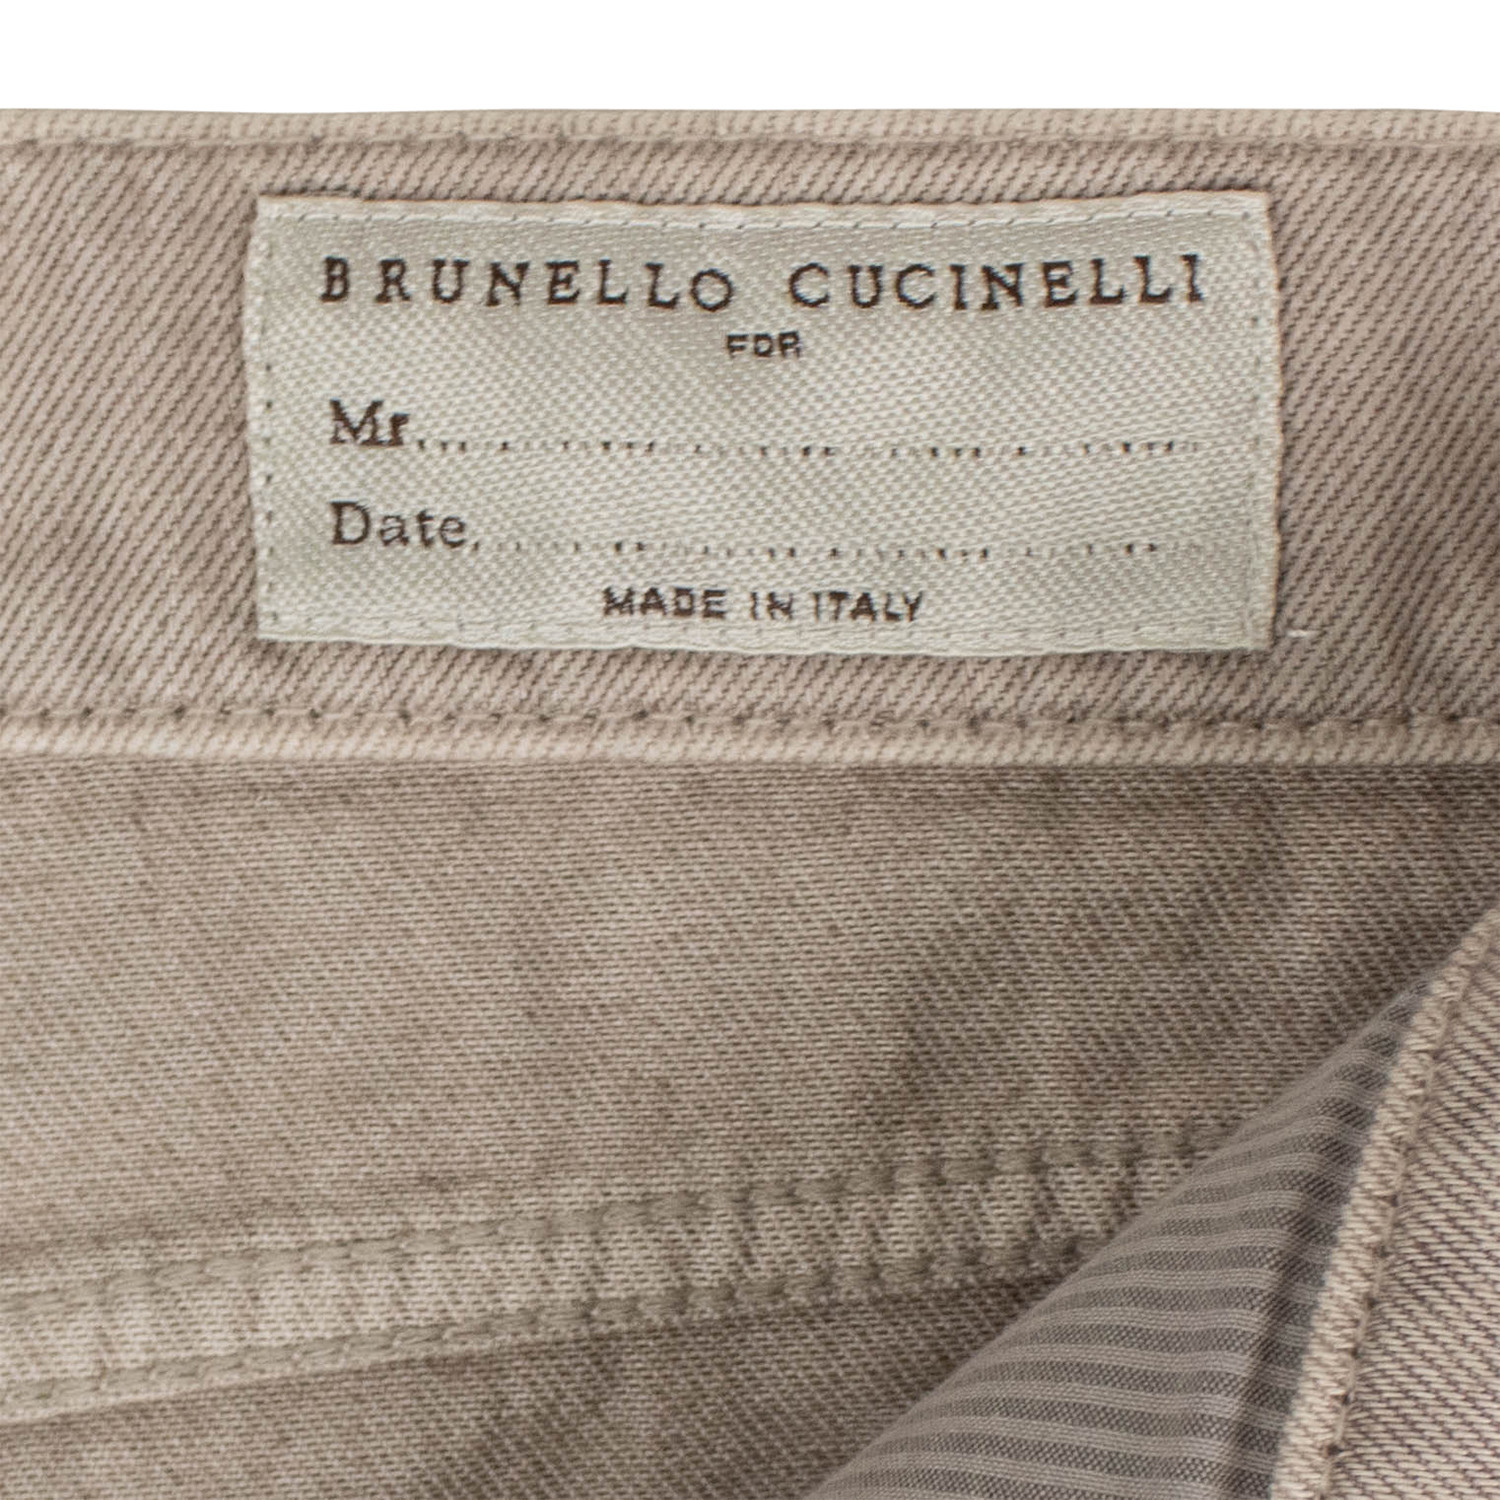 Brunello Cucinelli // Cotton Denim Jeans // Light Tan (50) - Apparel ...